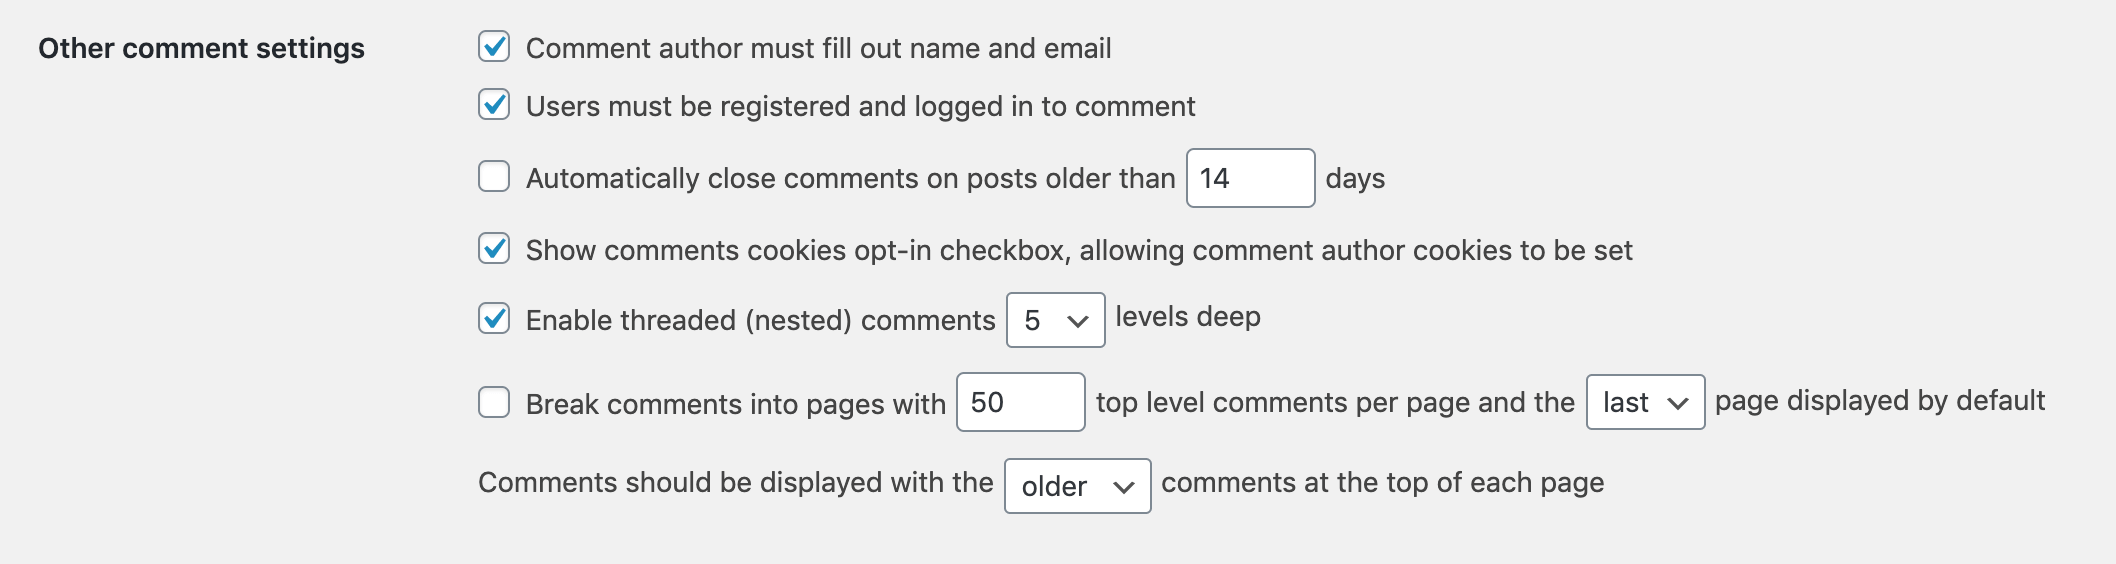 Restreindre les commentaires aux utilisateurs connectés dans WordPress.